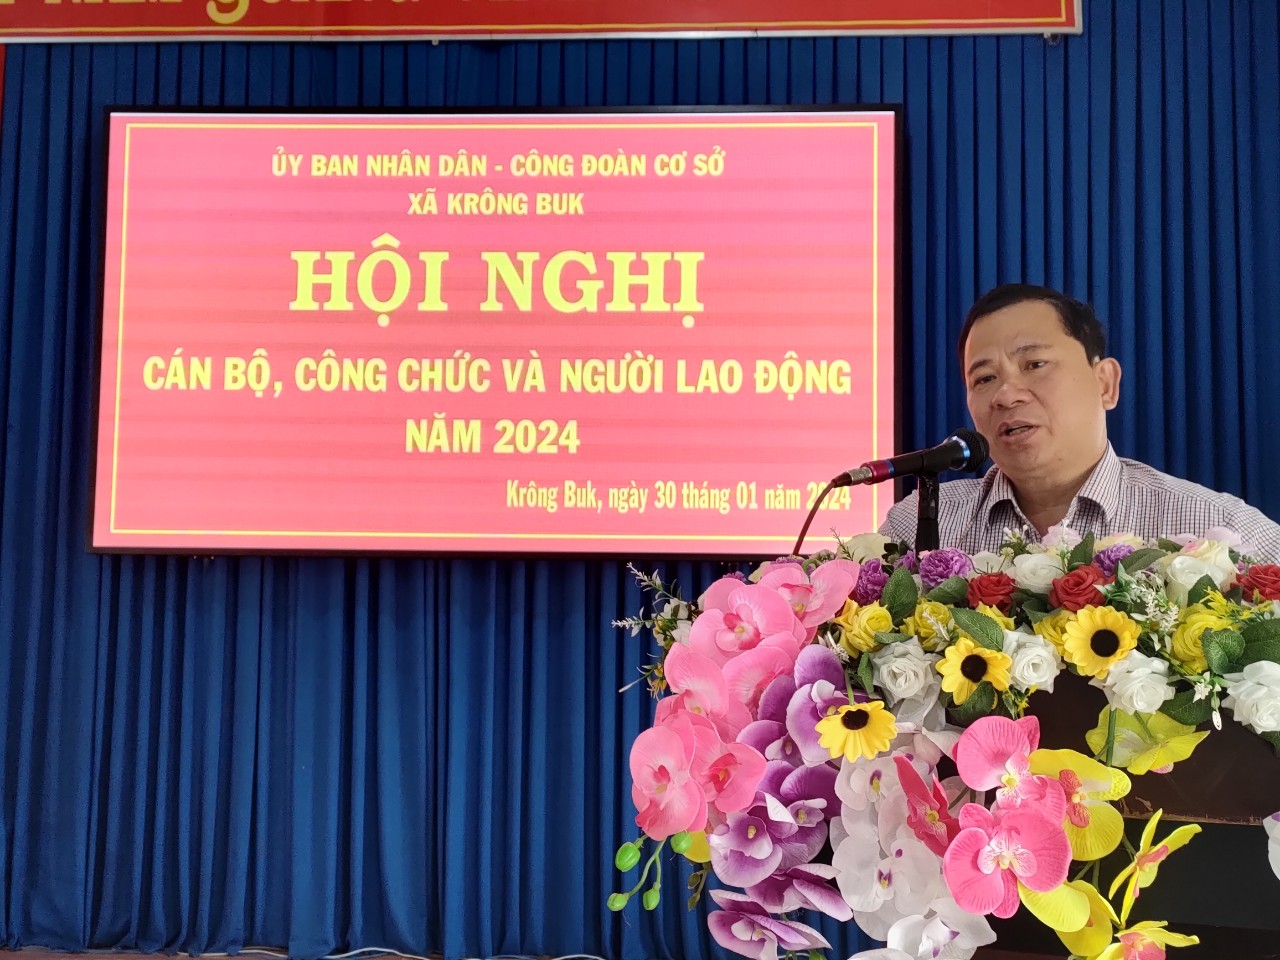 Hội nghị cán bộ, công chức, người lao động xã Krông Buk năm 2024